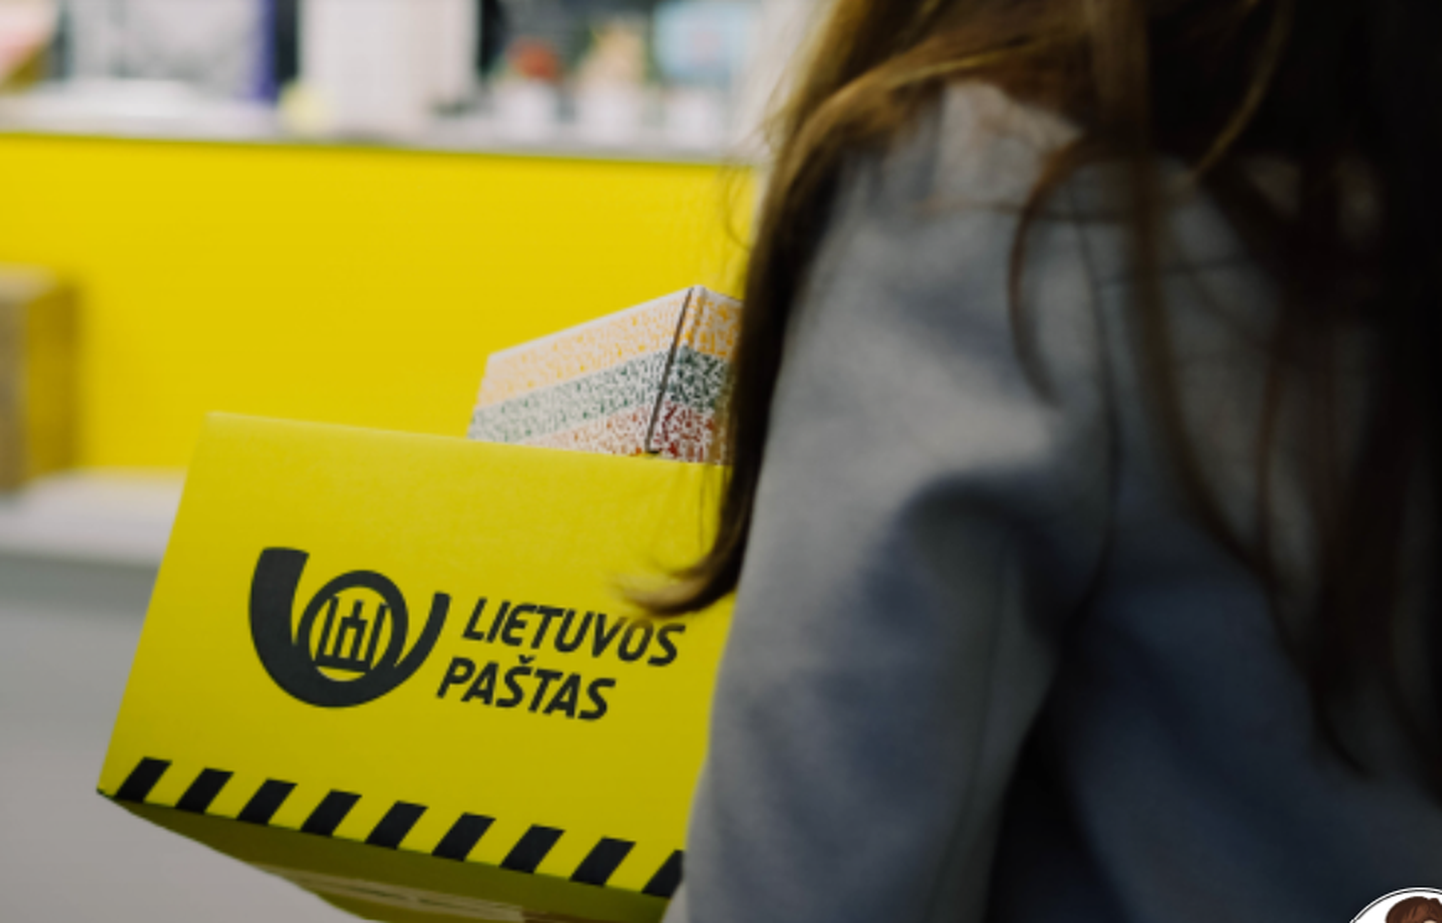 Государственное почтовое предприятие Литвы Lietuvos Pastas